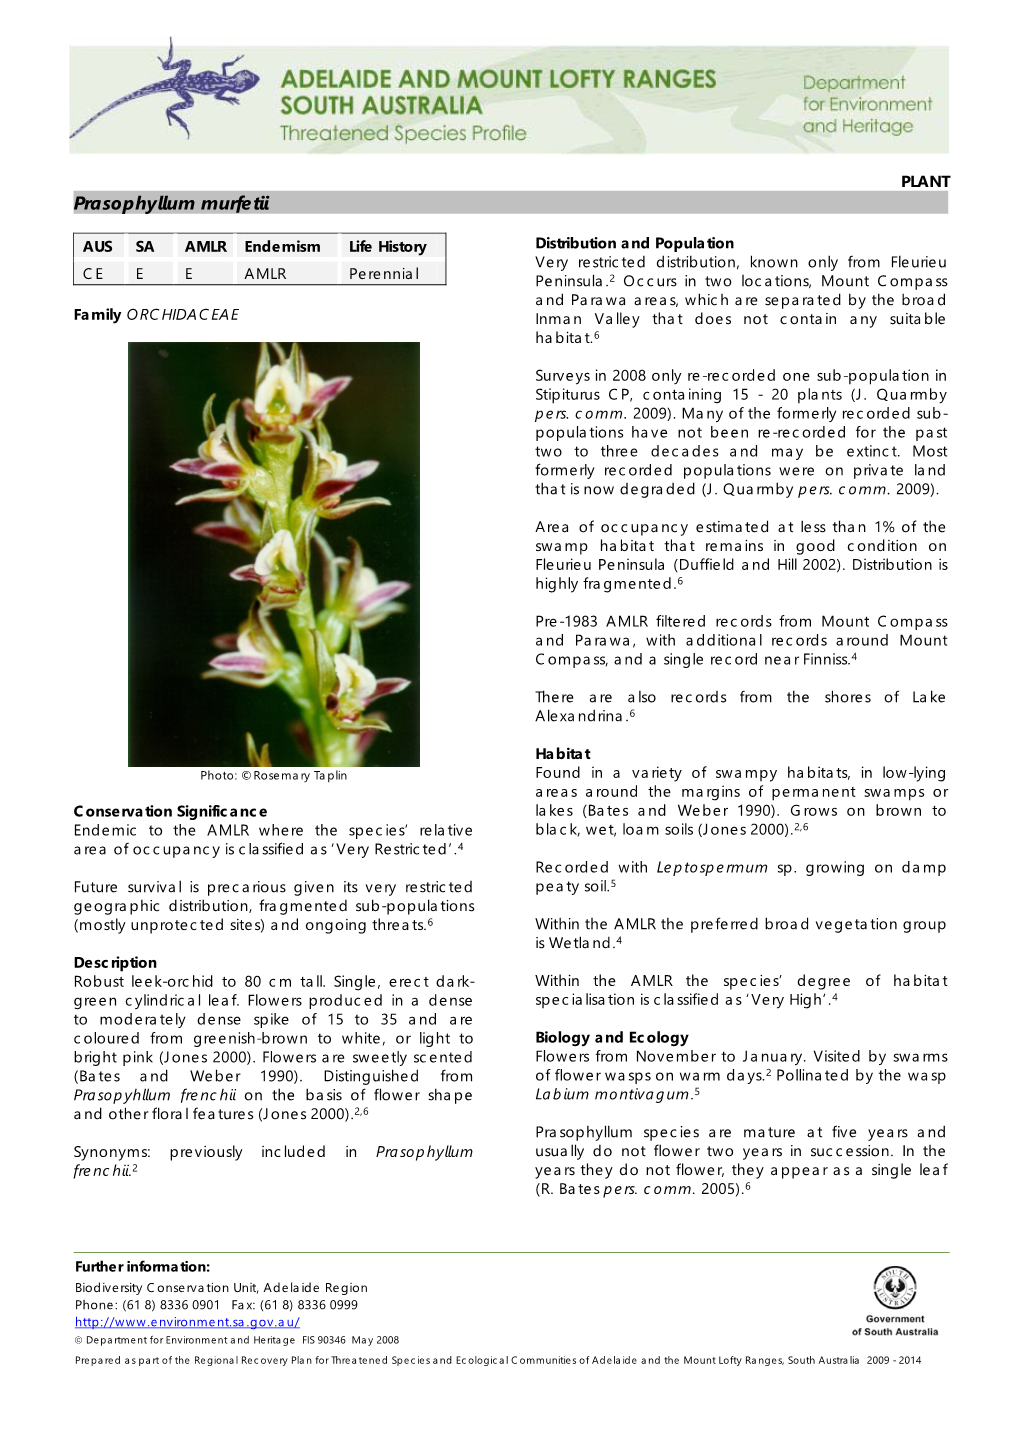 Prasophyllum Murfetii